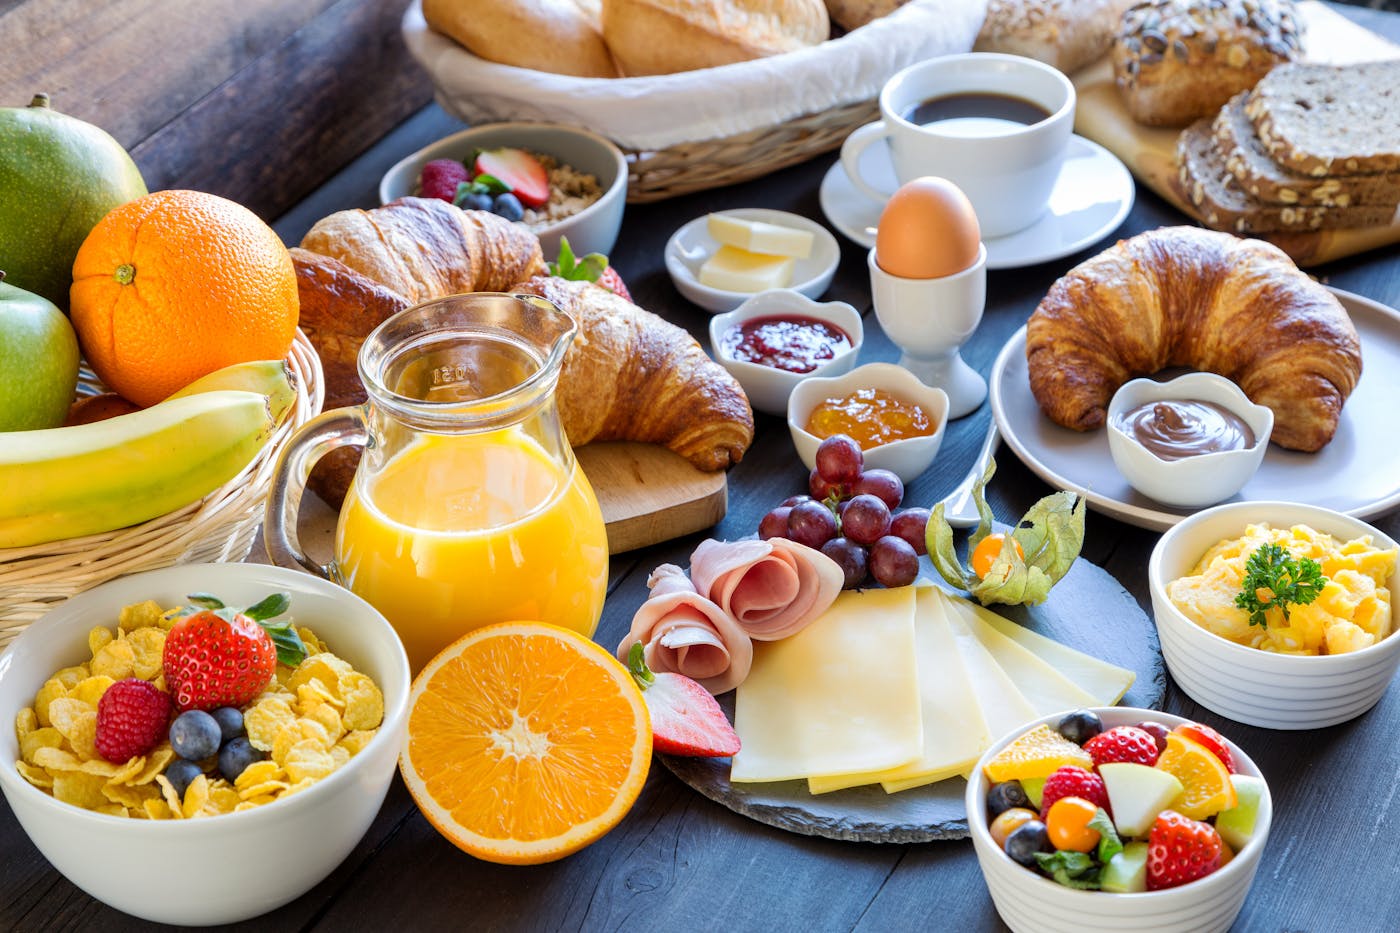 Reich gedeckter Frühstückstisch mit Obst, Müsli, Orangensaft, Croissants, Käse und Eiern.